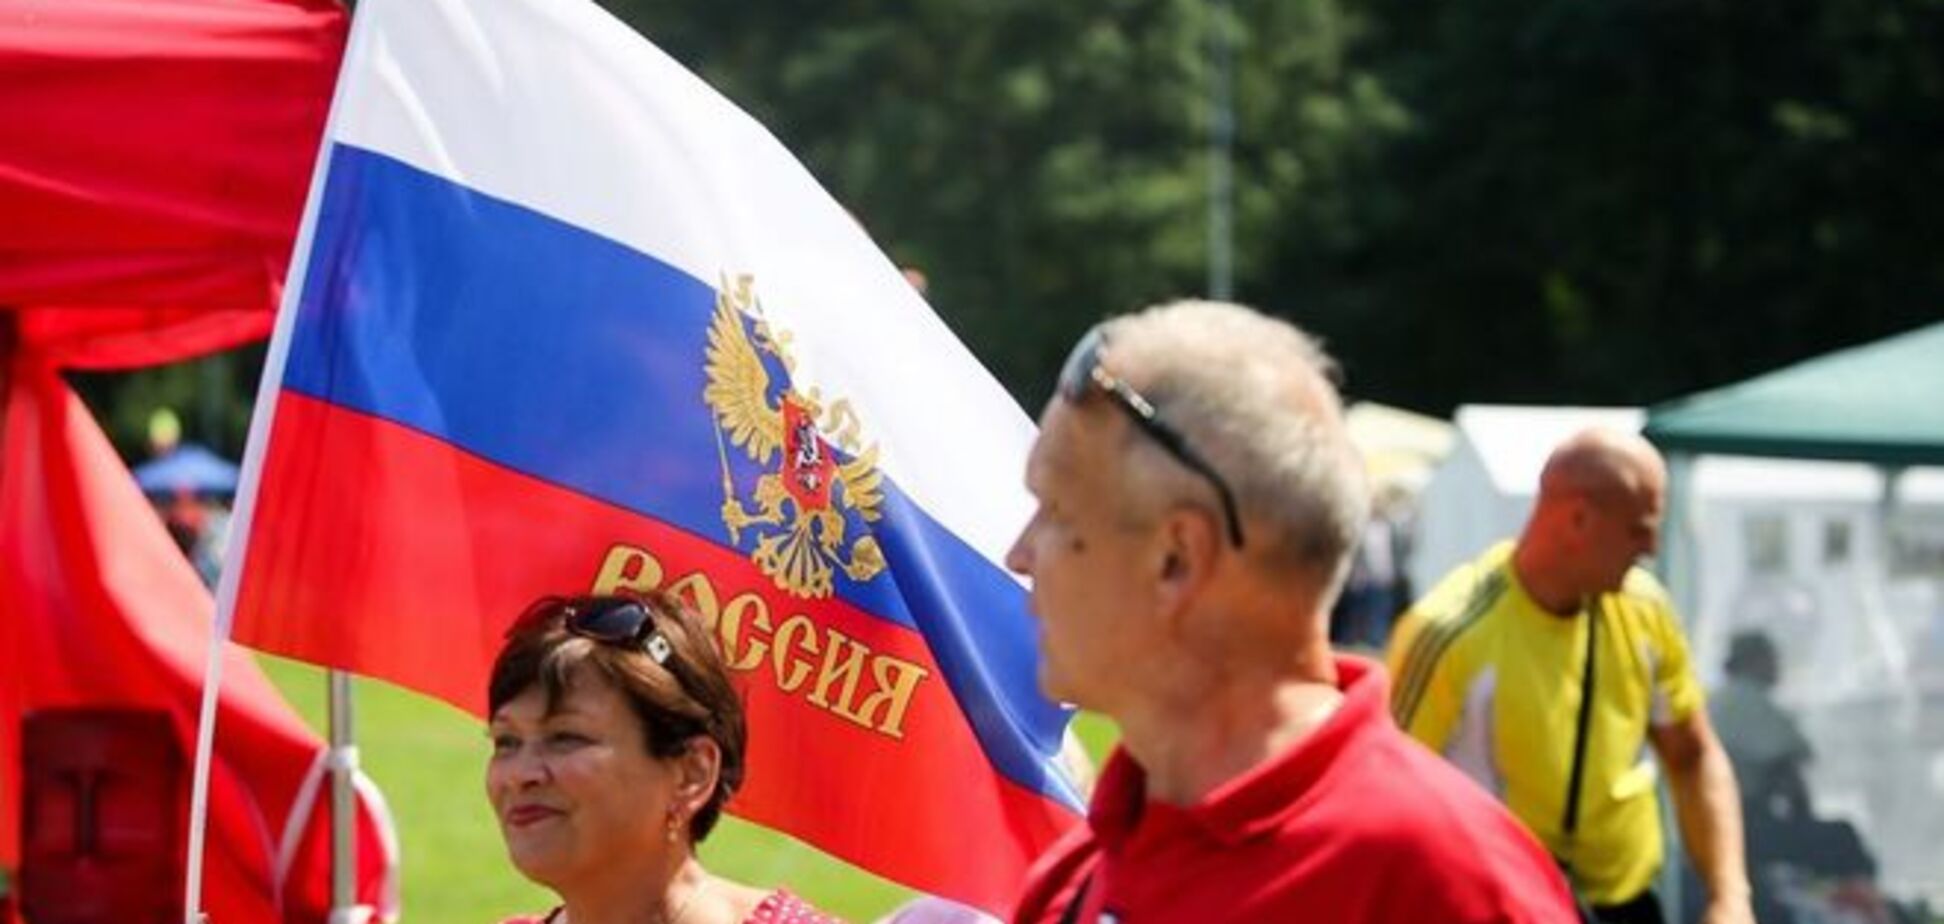 'Это аморально': литовский депутат осудил праздник русской культуры в Вильнюсе